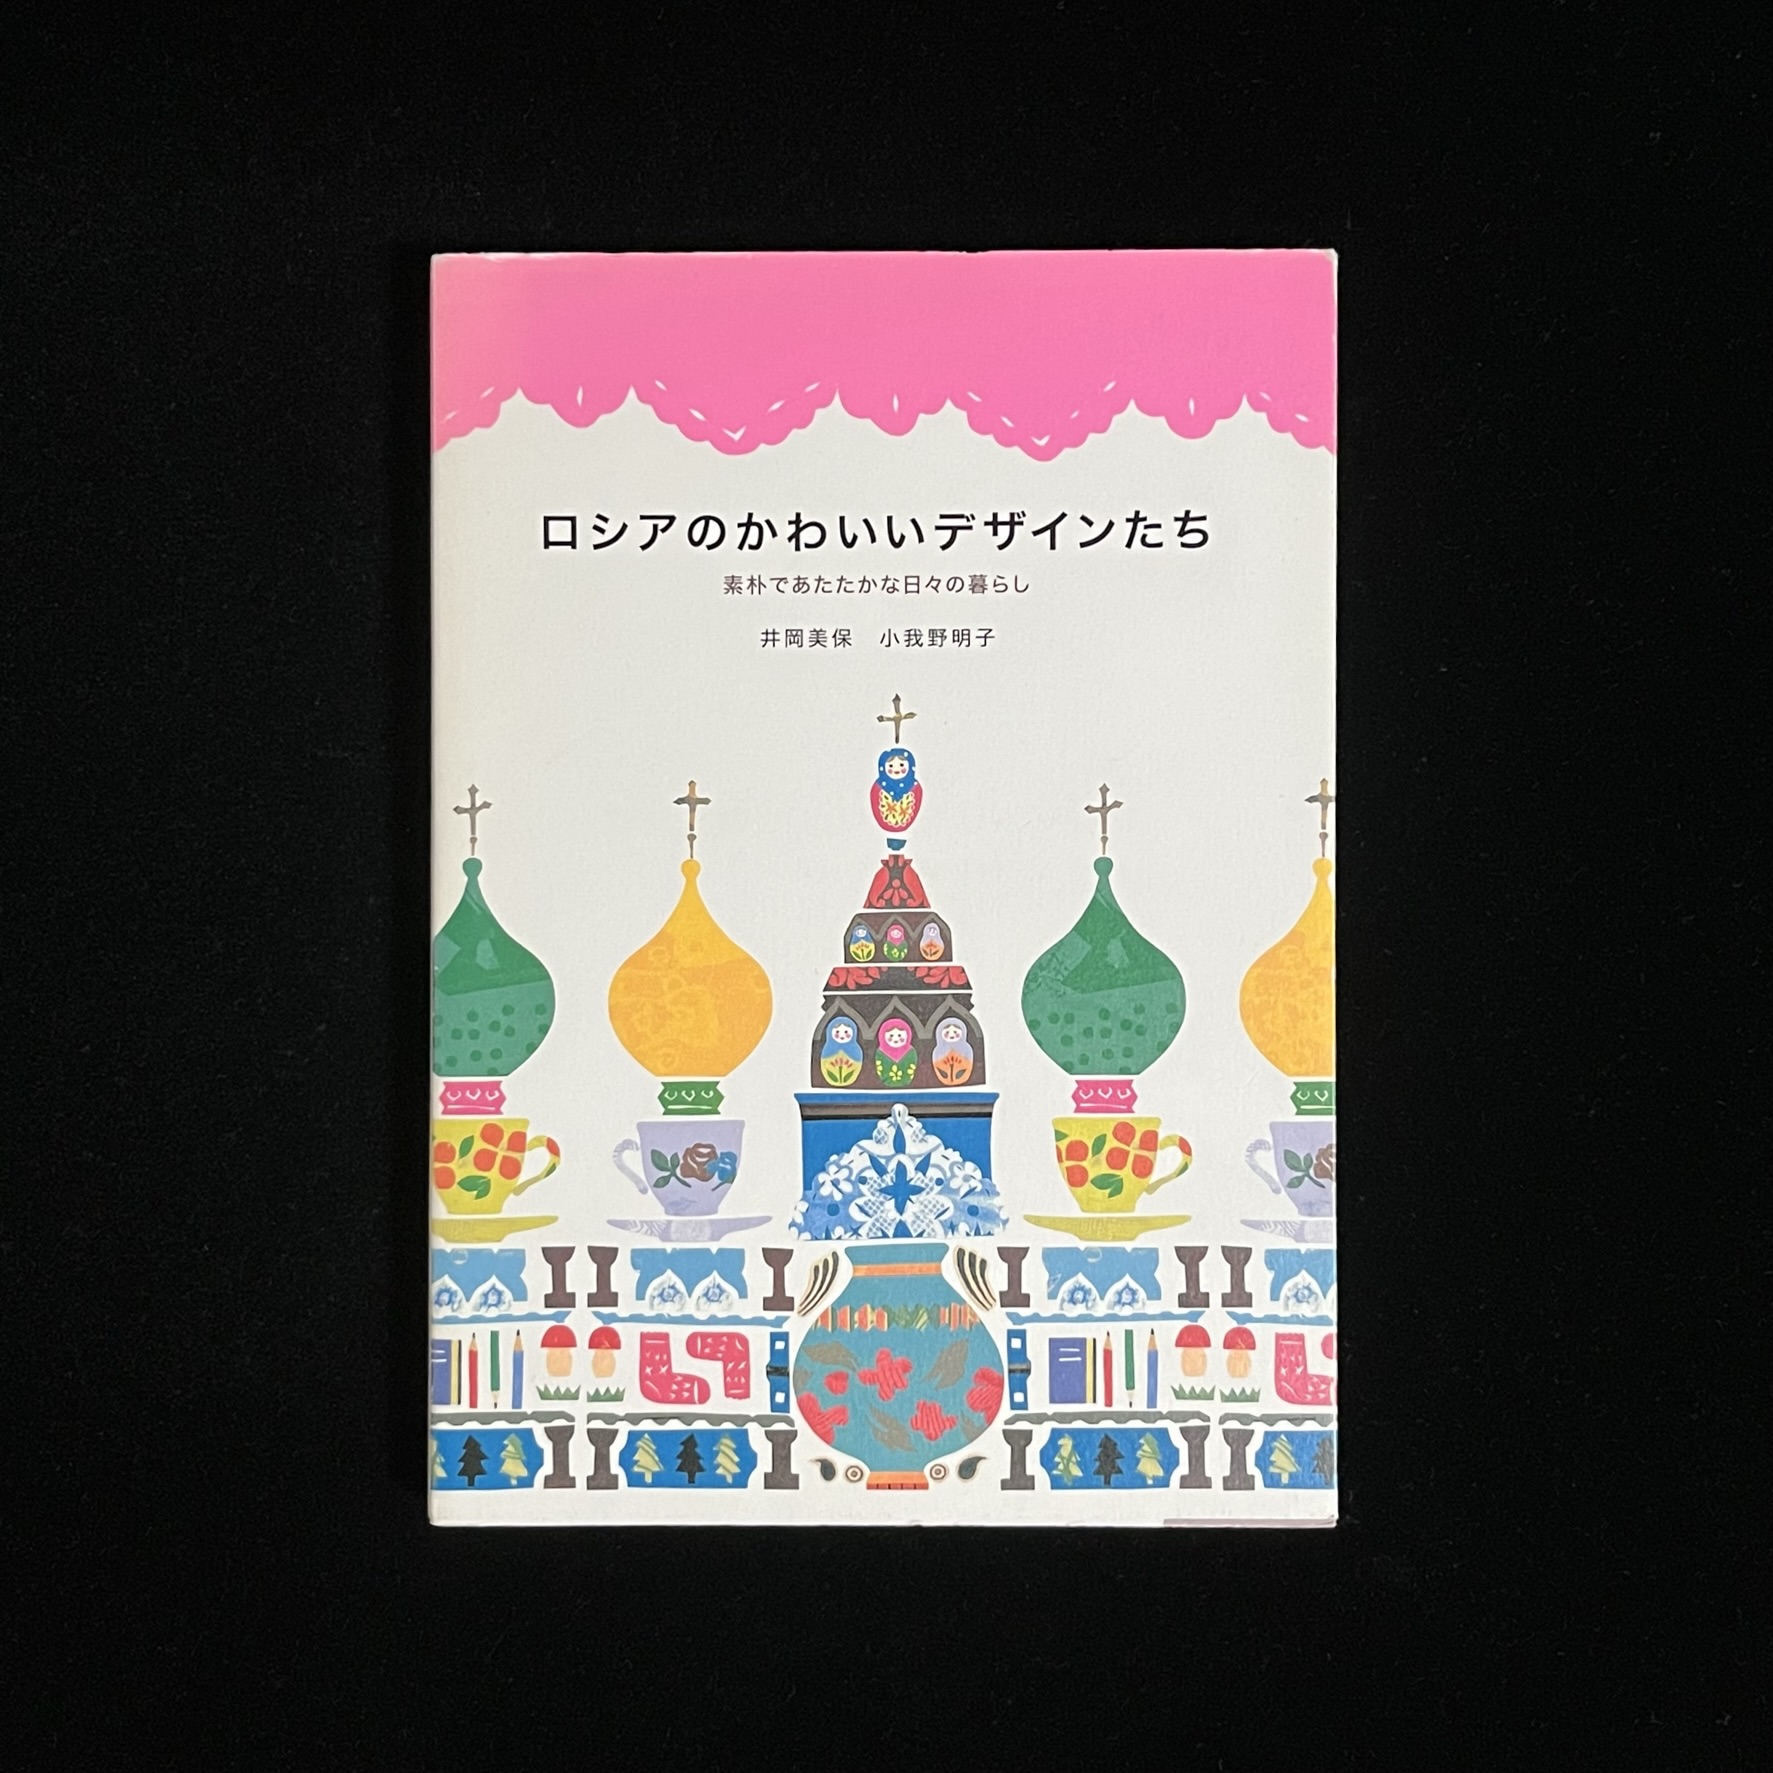 『ロシアのかわいいデザインたち』の本の表紙の写真。カラフルな雑貨の上にコーヒーカップ。その上にモスクのタマネギ型の屋根が載っているイラストが描かれています。